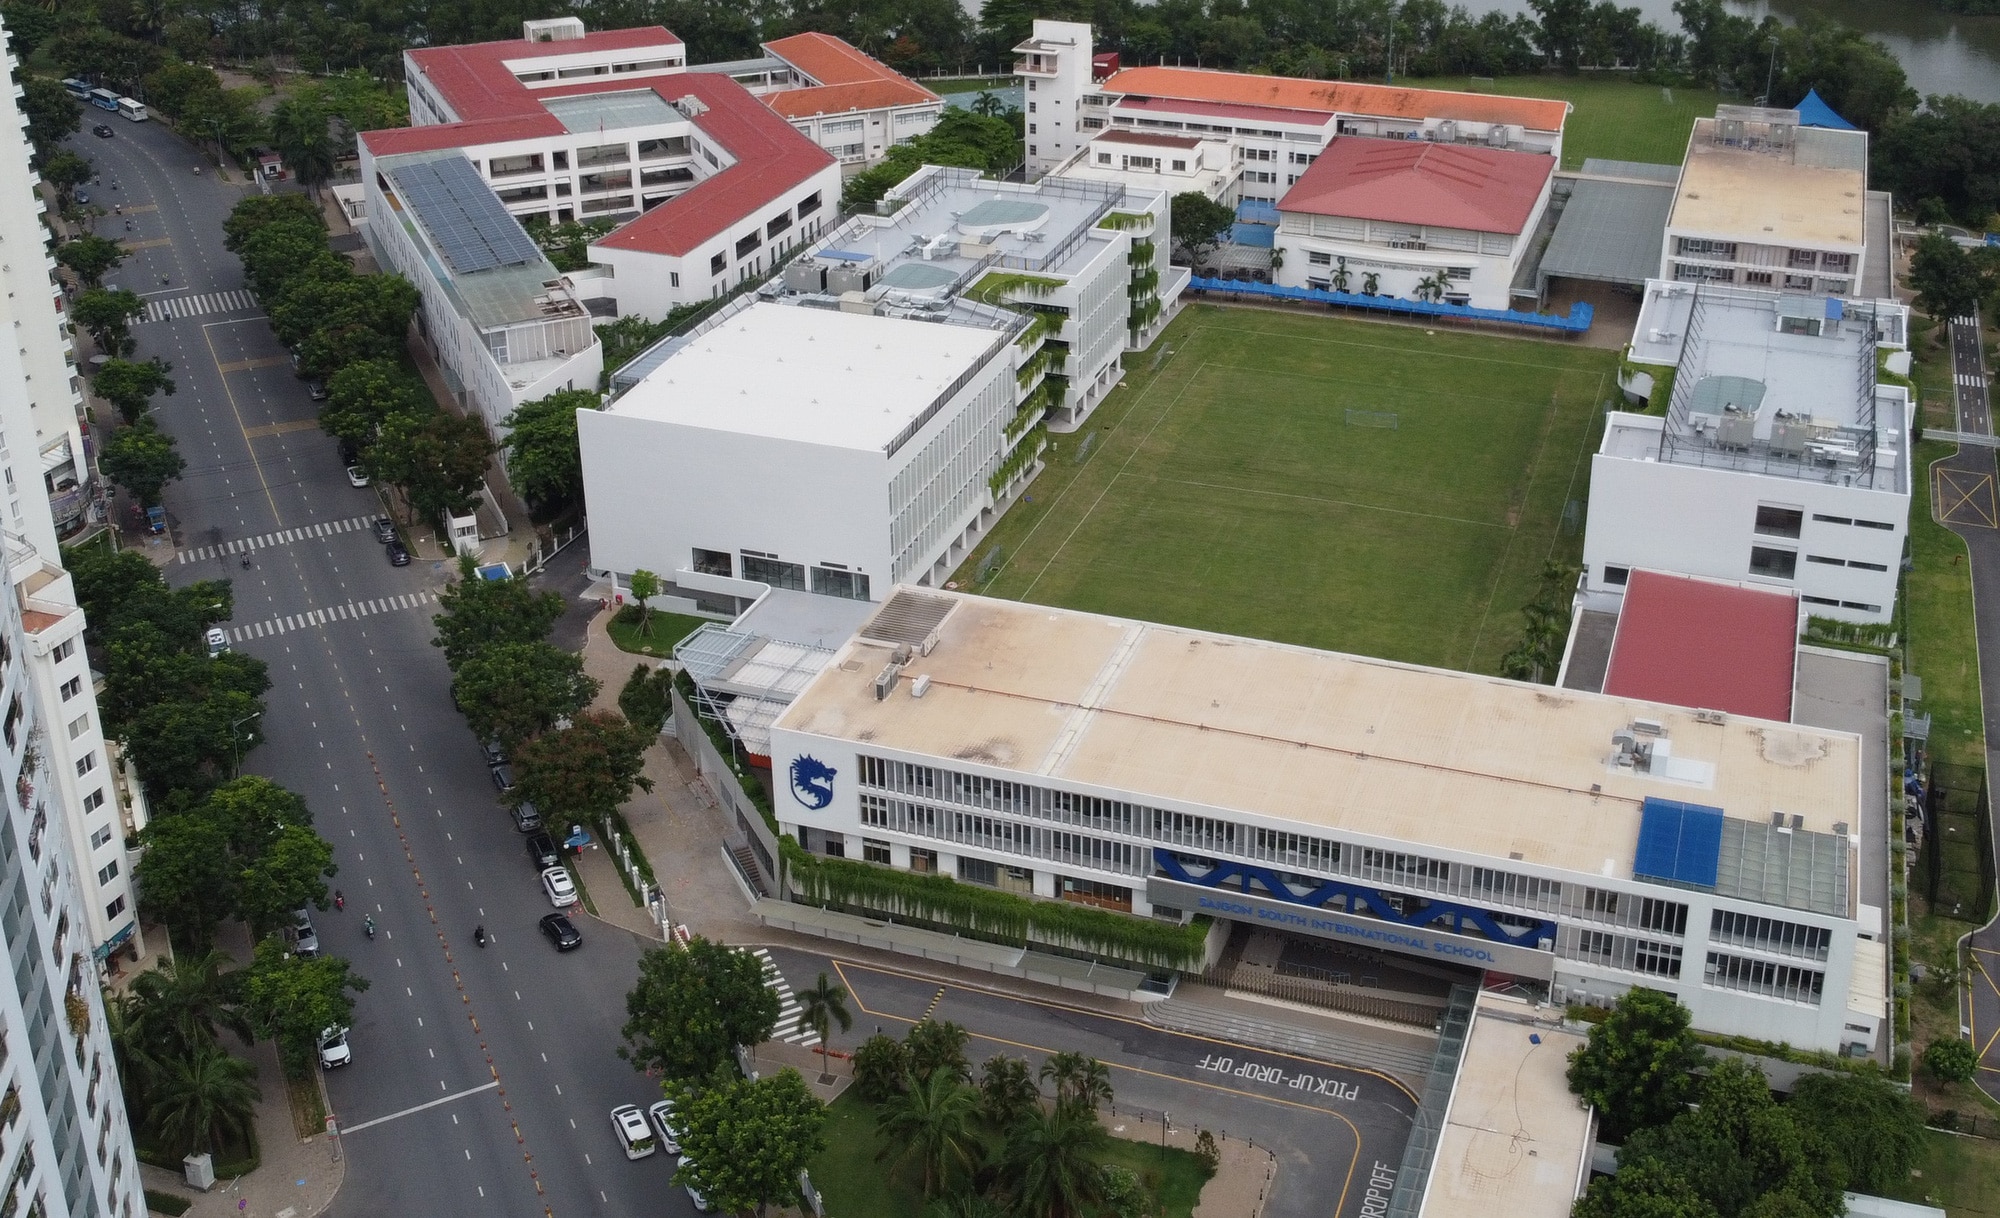 Trường quốc tế Nam Sài Gòn có khối nhà A3, A6 với tổng diện tích gần 10.000m² được Công ty Phú Mỹ Hưng xây không phép - Ảnh: MINH HÒA